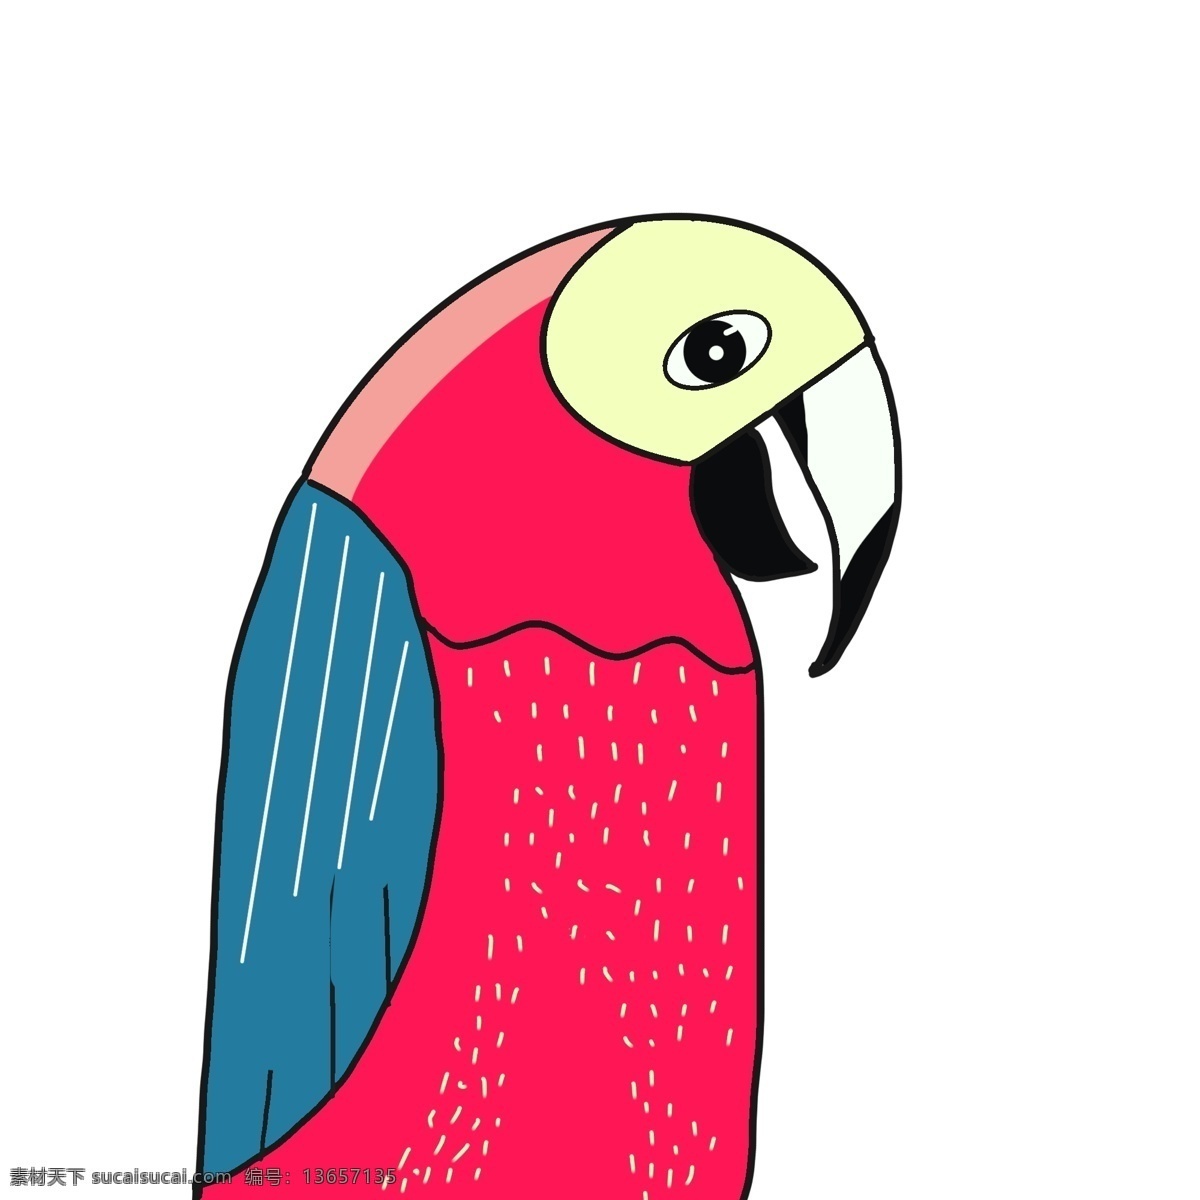 彩绘 小鸟 鹦鹉 动物 卡通 插画 彩色 psd元素